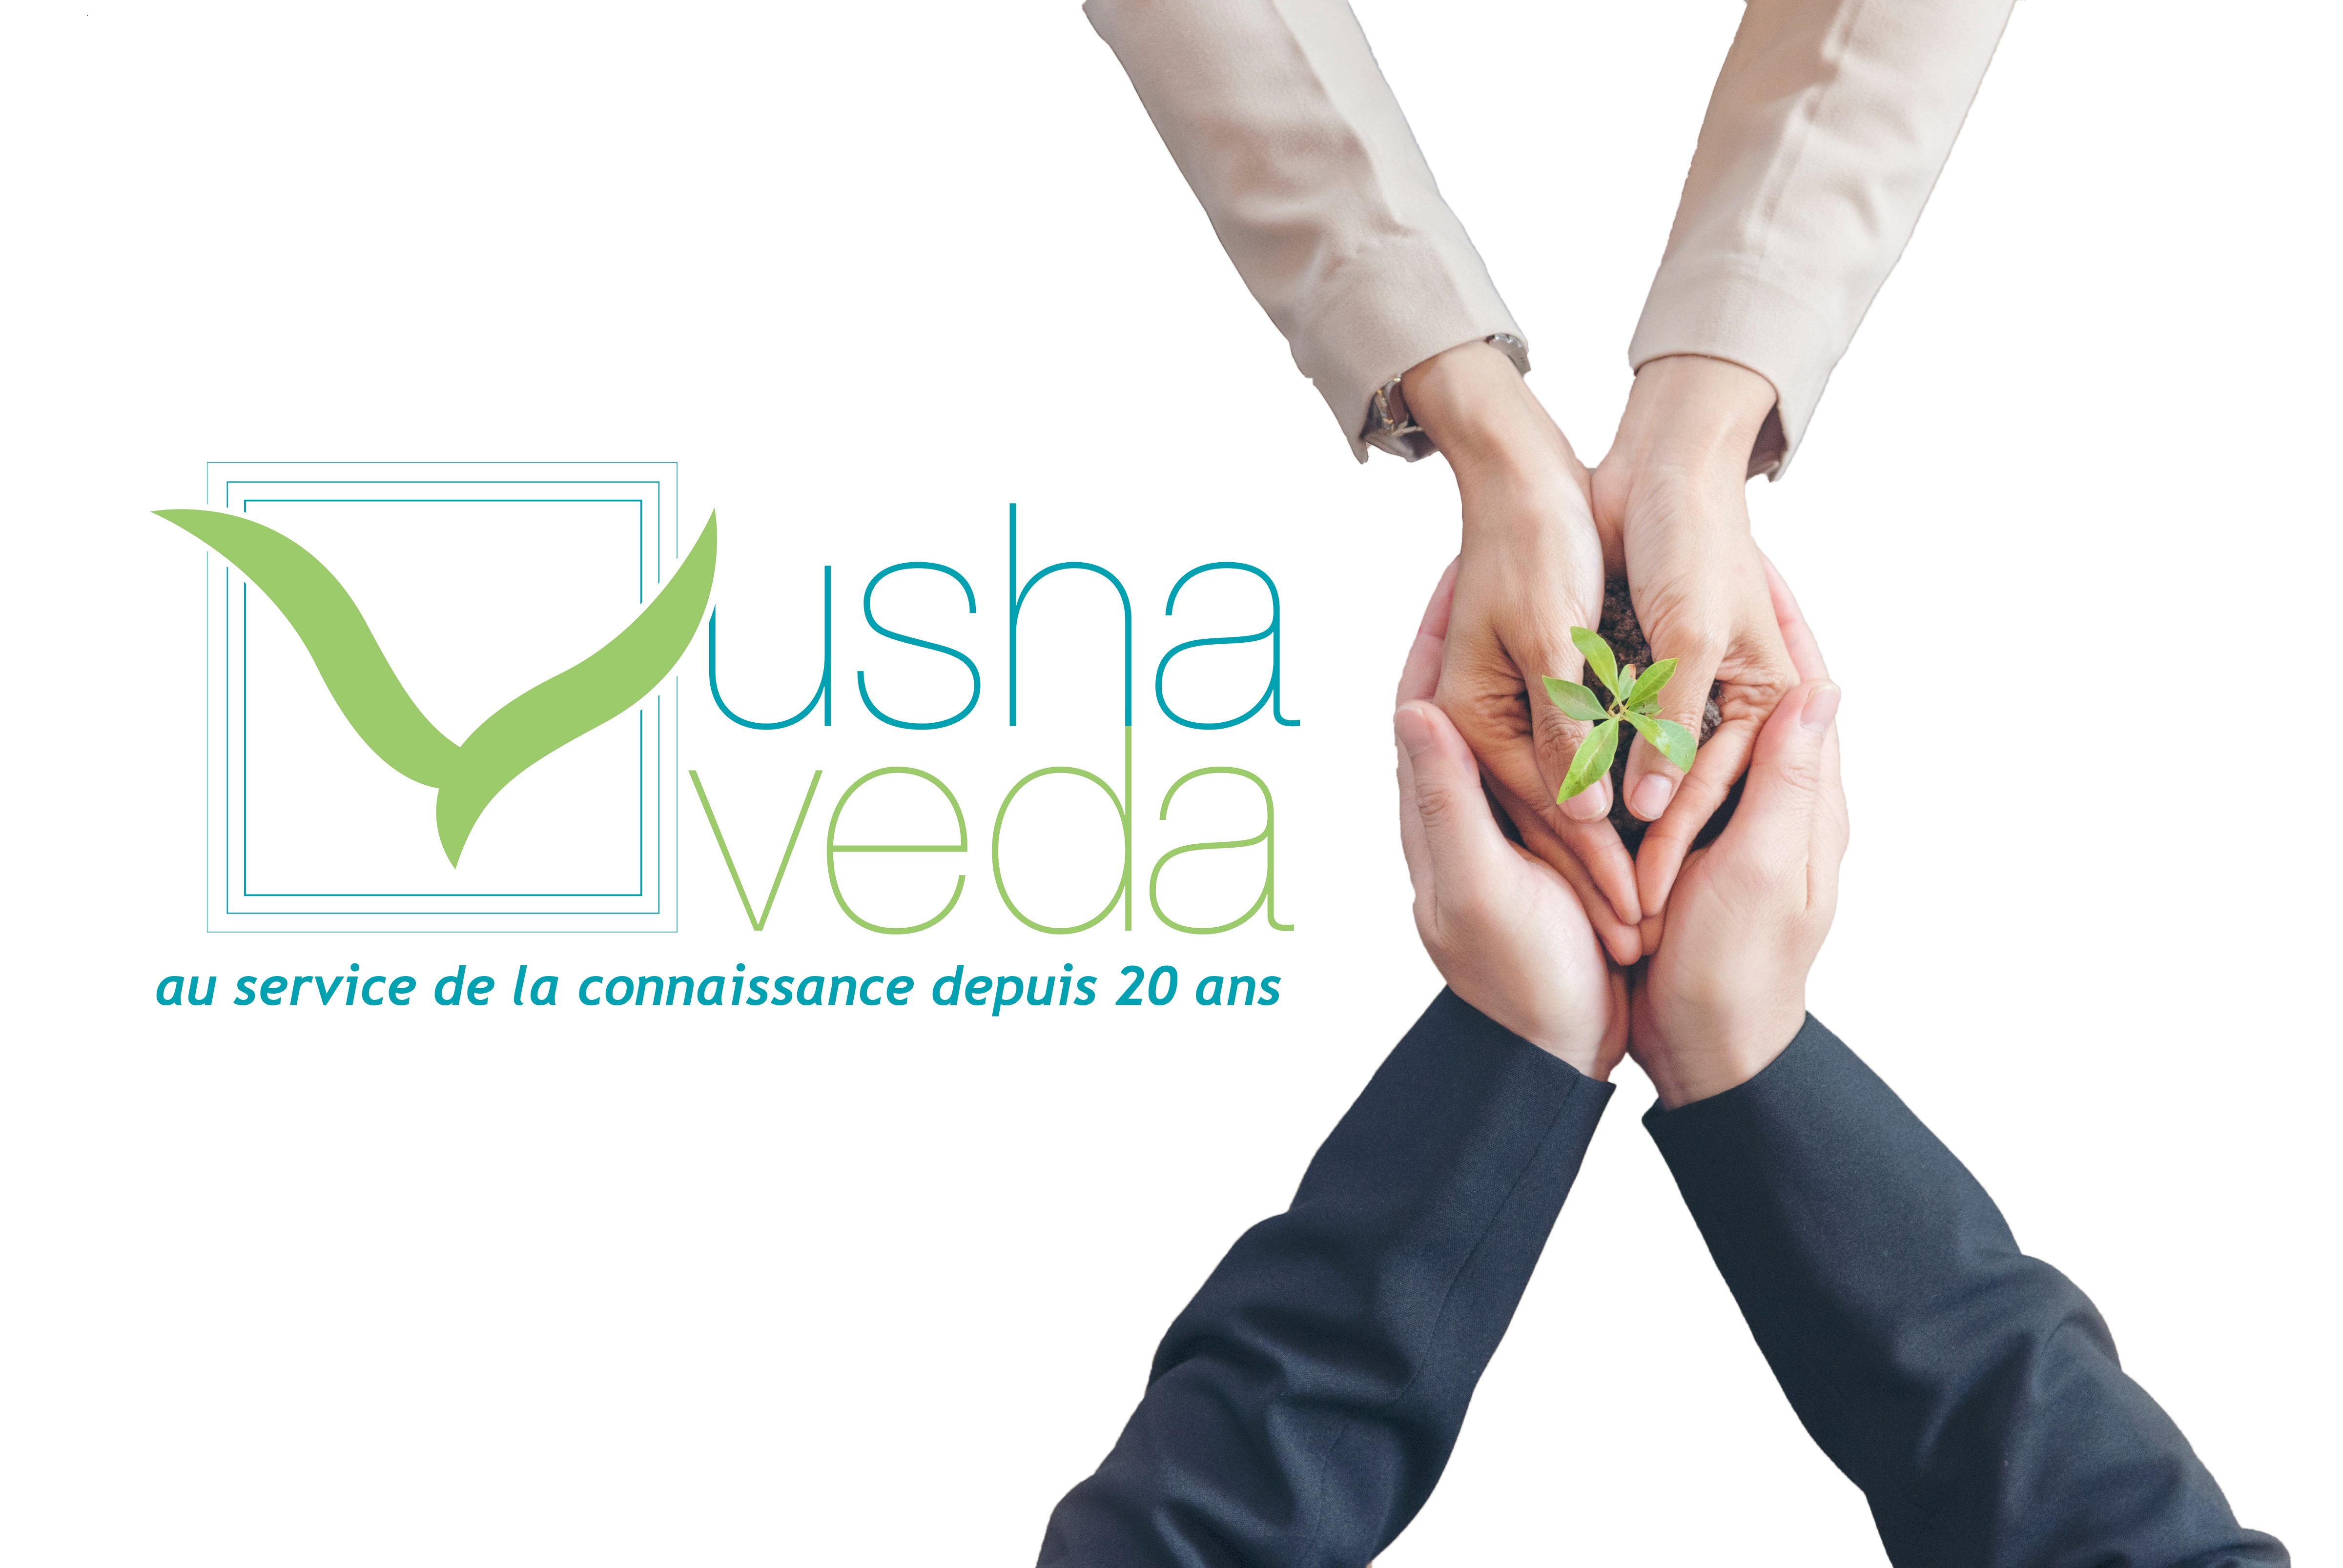 Usha Veda fête ses 20 ans !